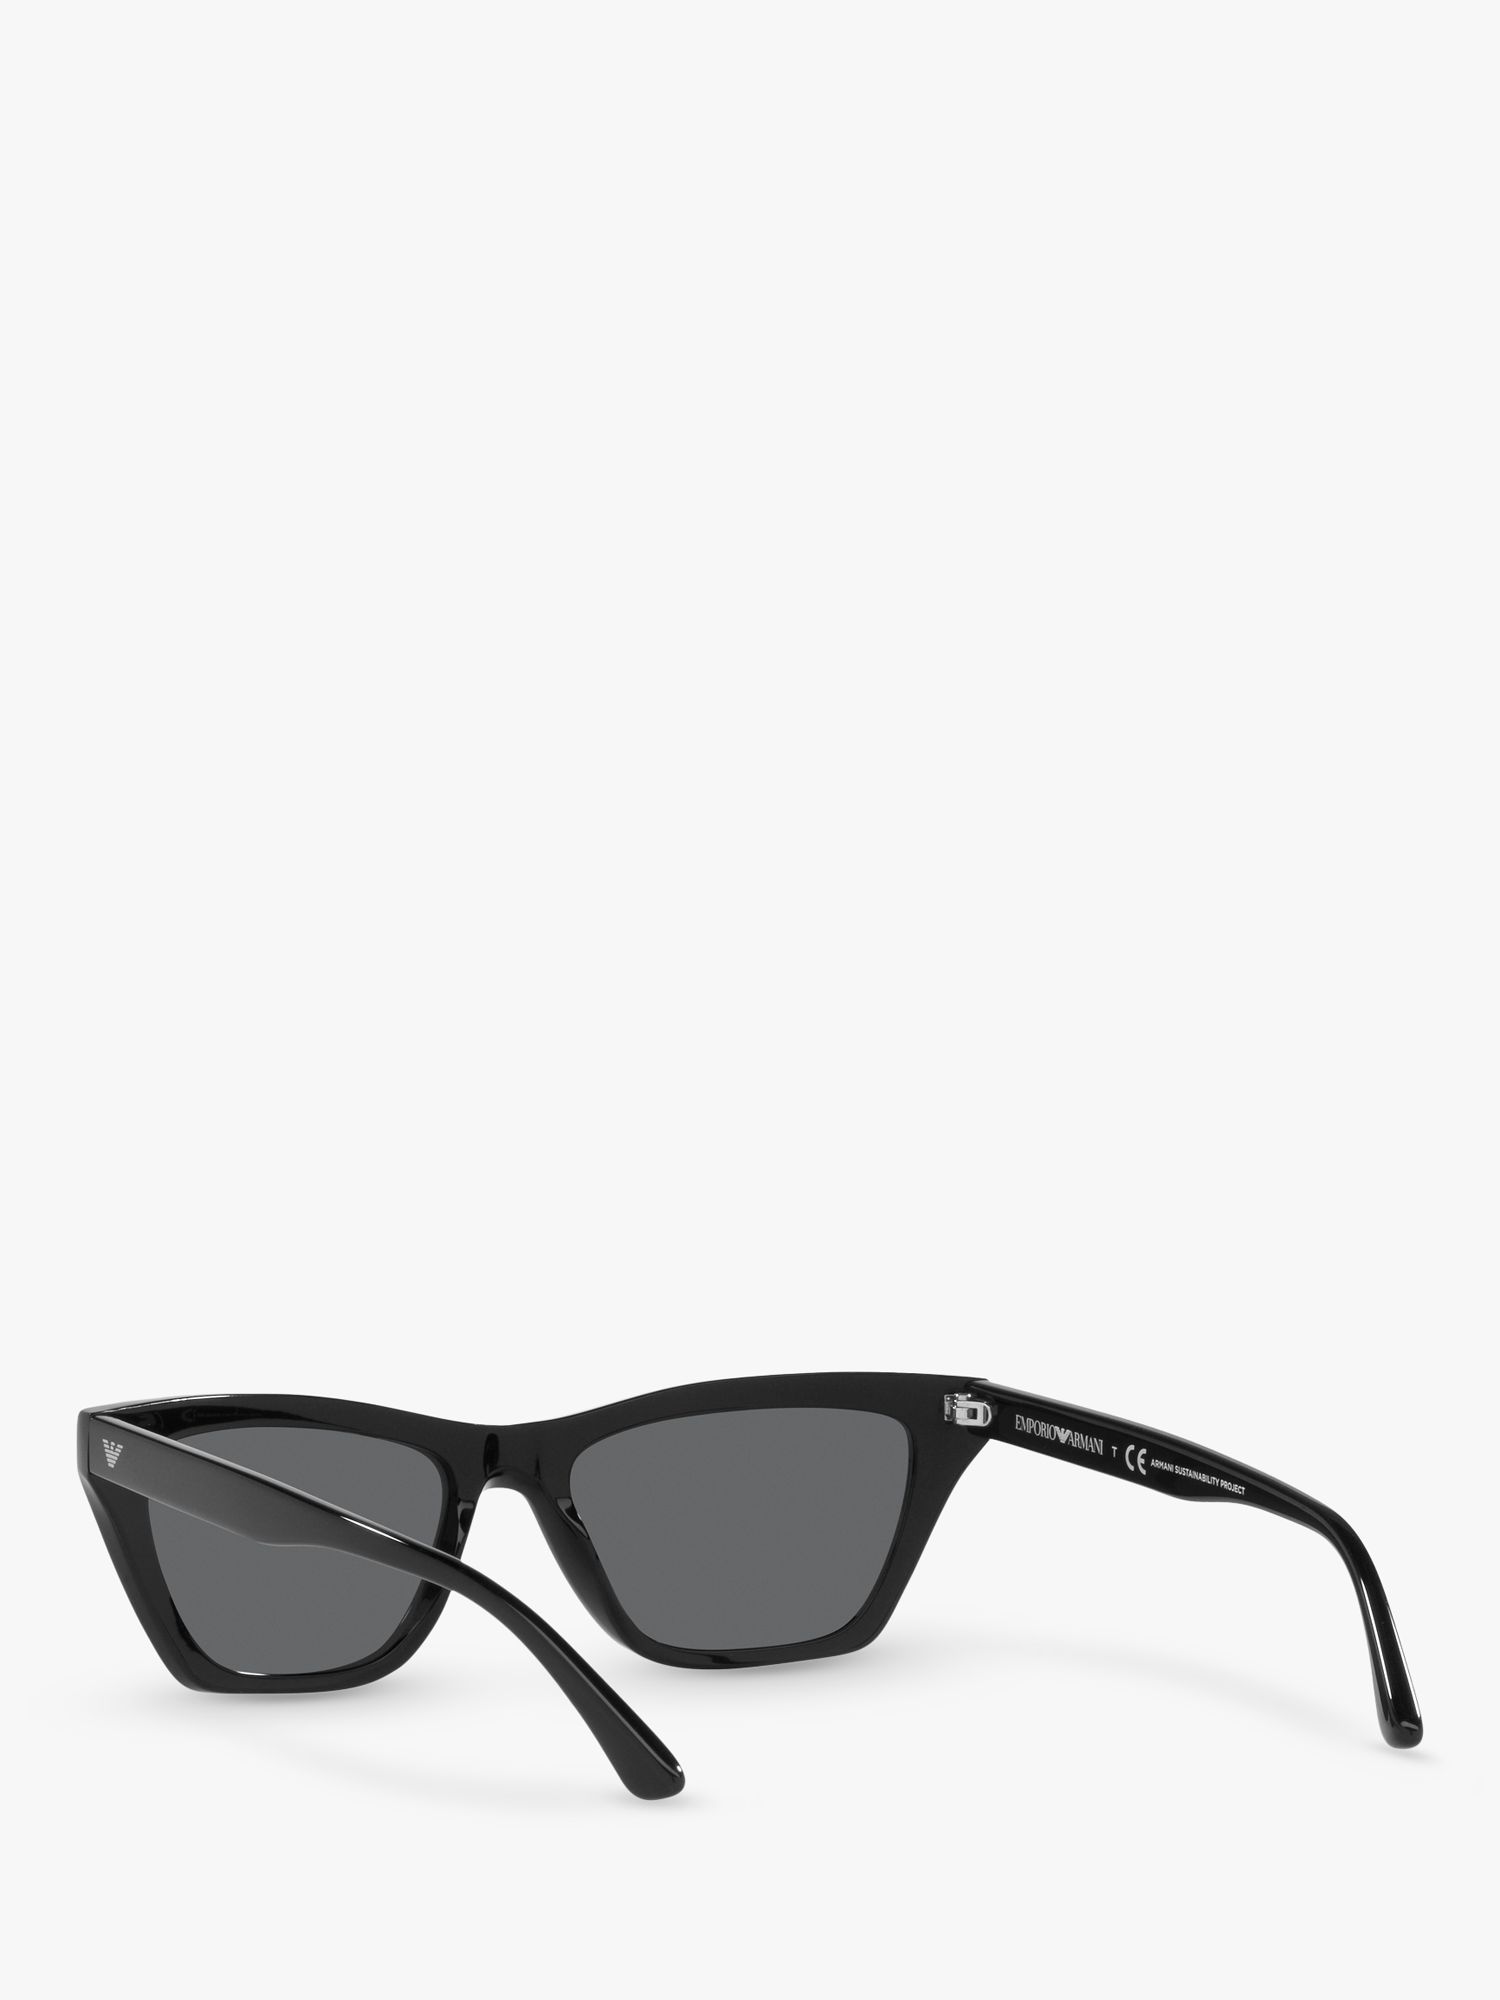 Emporio Armani EA4169 Sunglasses